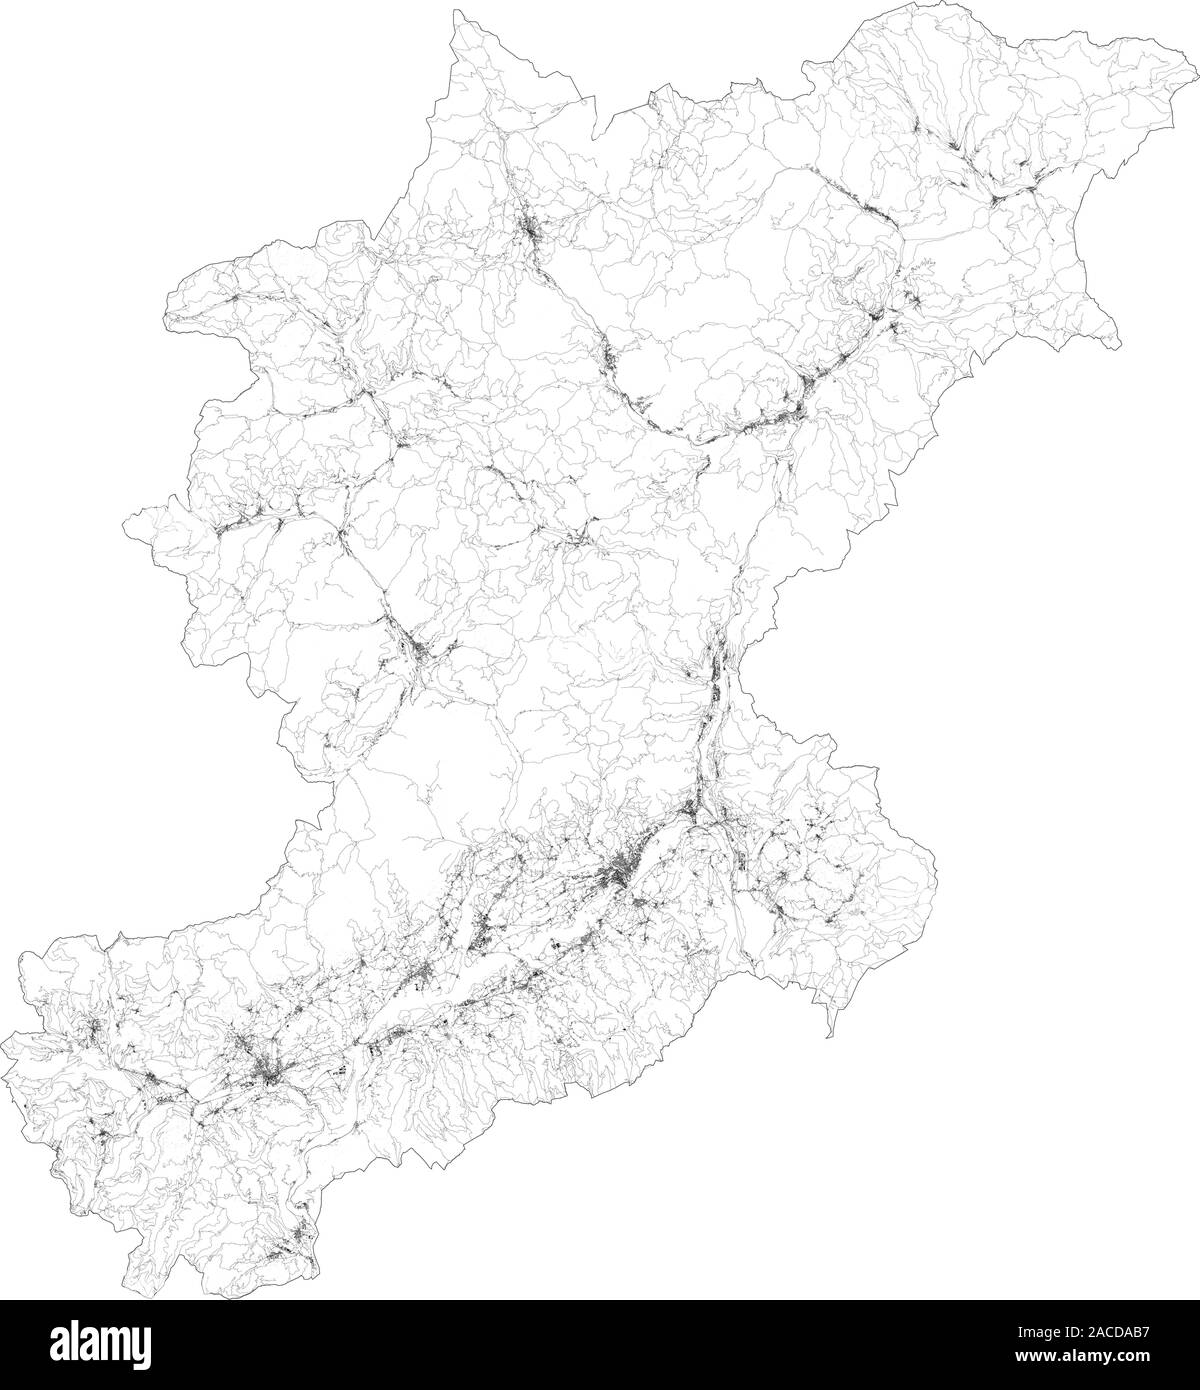 Sat-Karte der Provinz von Belluno, Städte und Straßen, Gebäude und Straßen der Umgebung. Venetien, Italien. Karte Straßen Stock Vektor